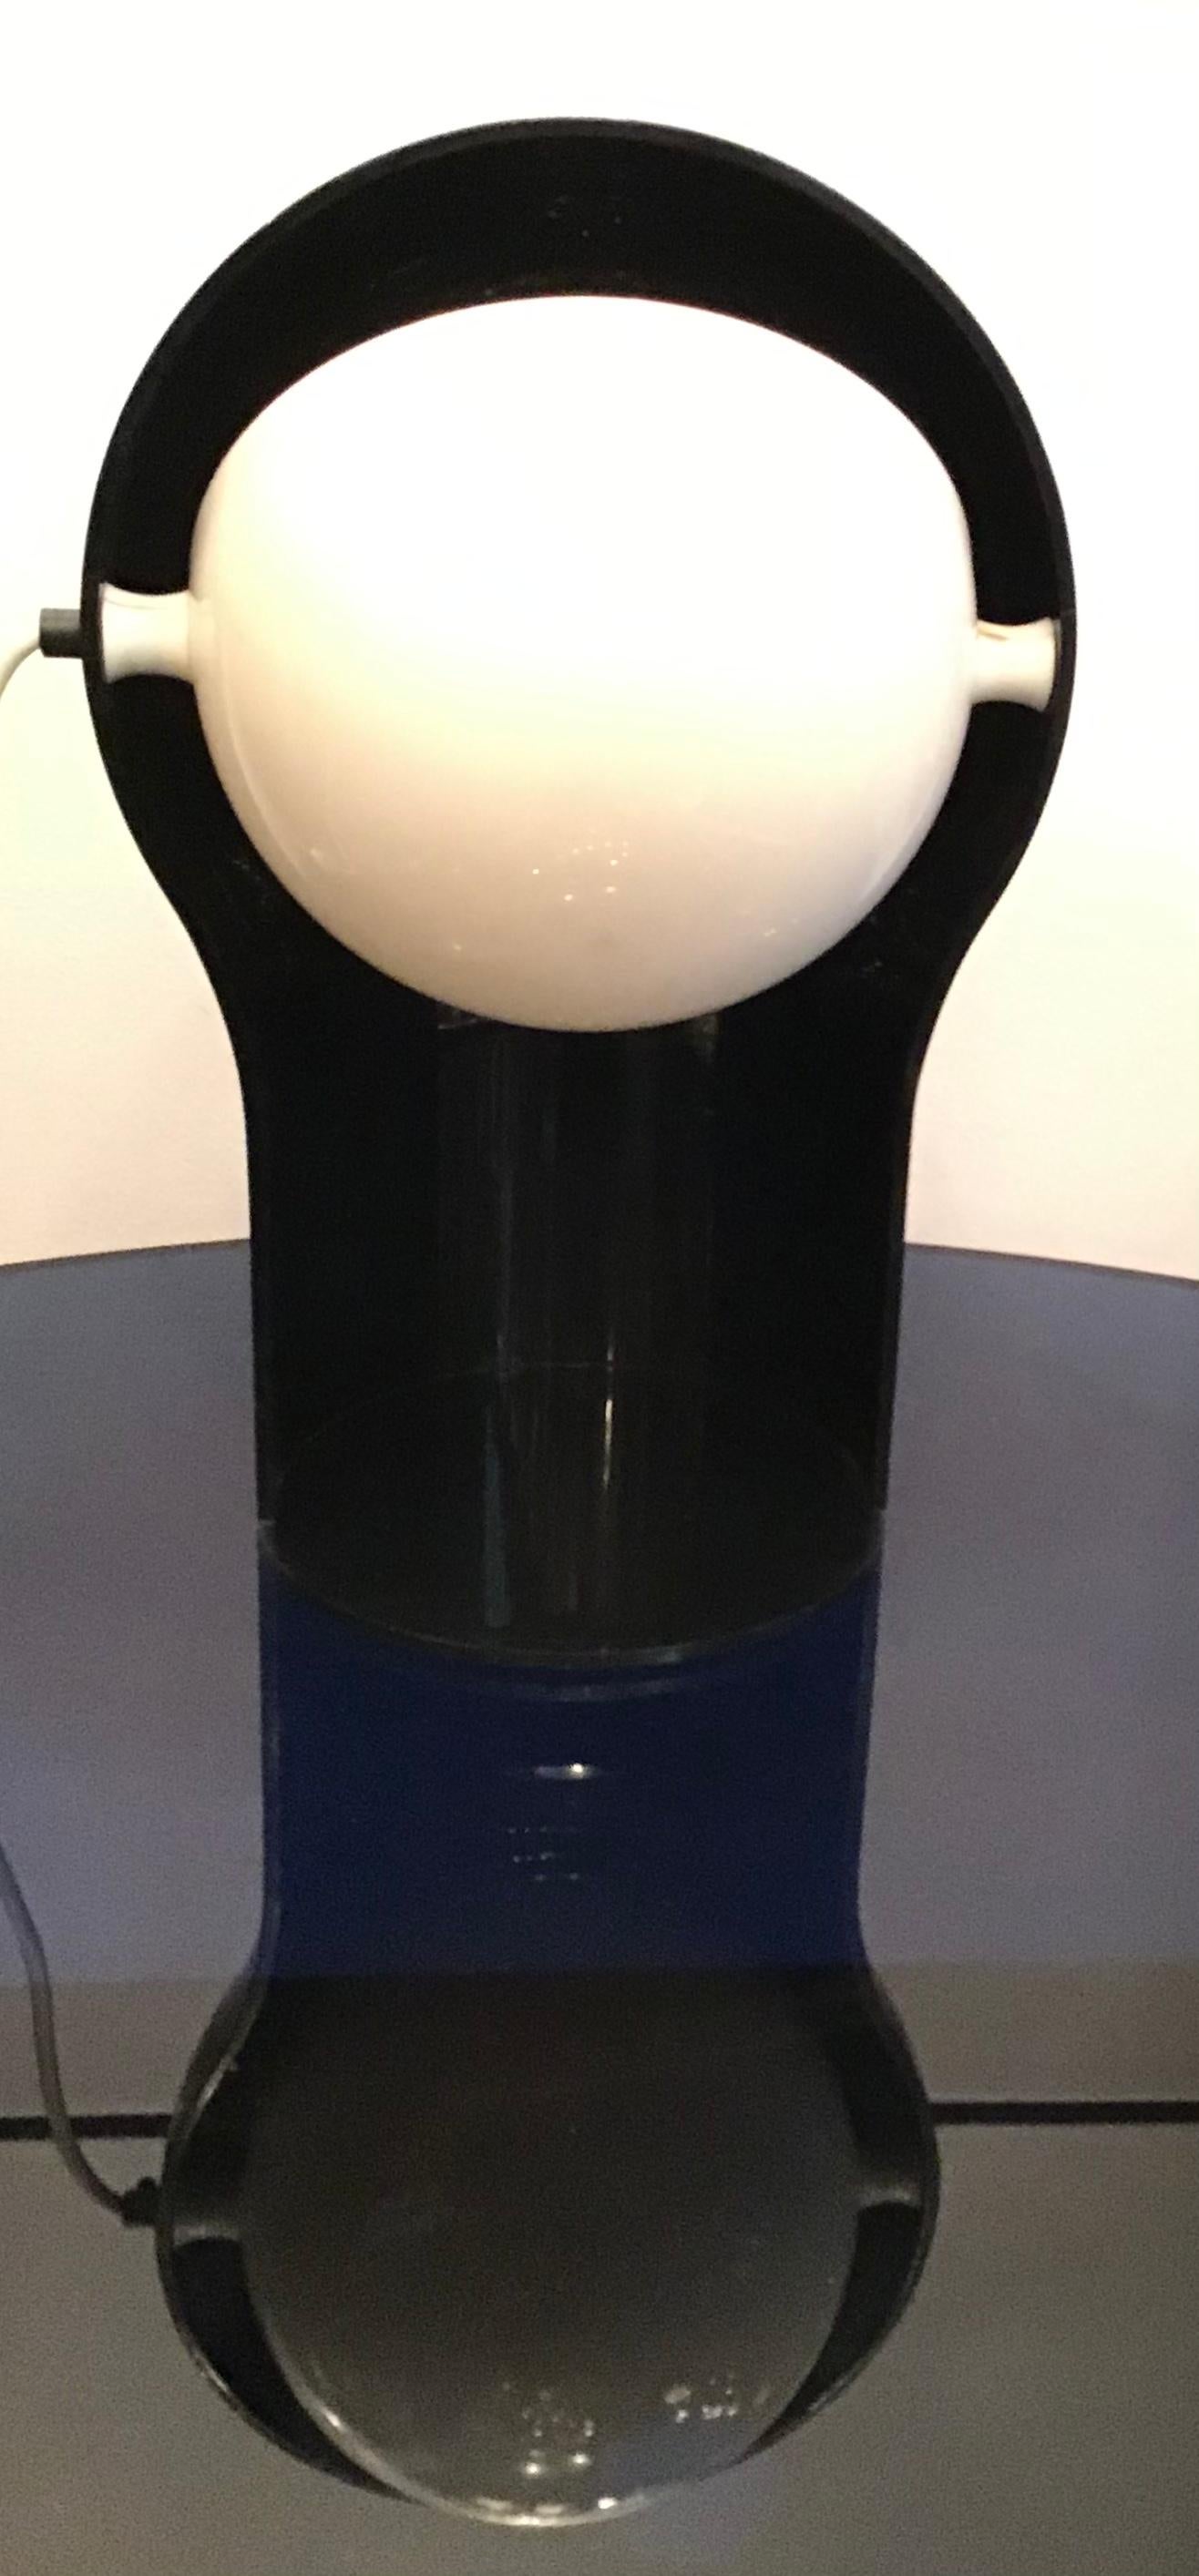 Mid-20th Century Vico Magistretti “Telegono” Table Lamp 1966 Perplex, Italy For Sale